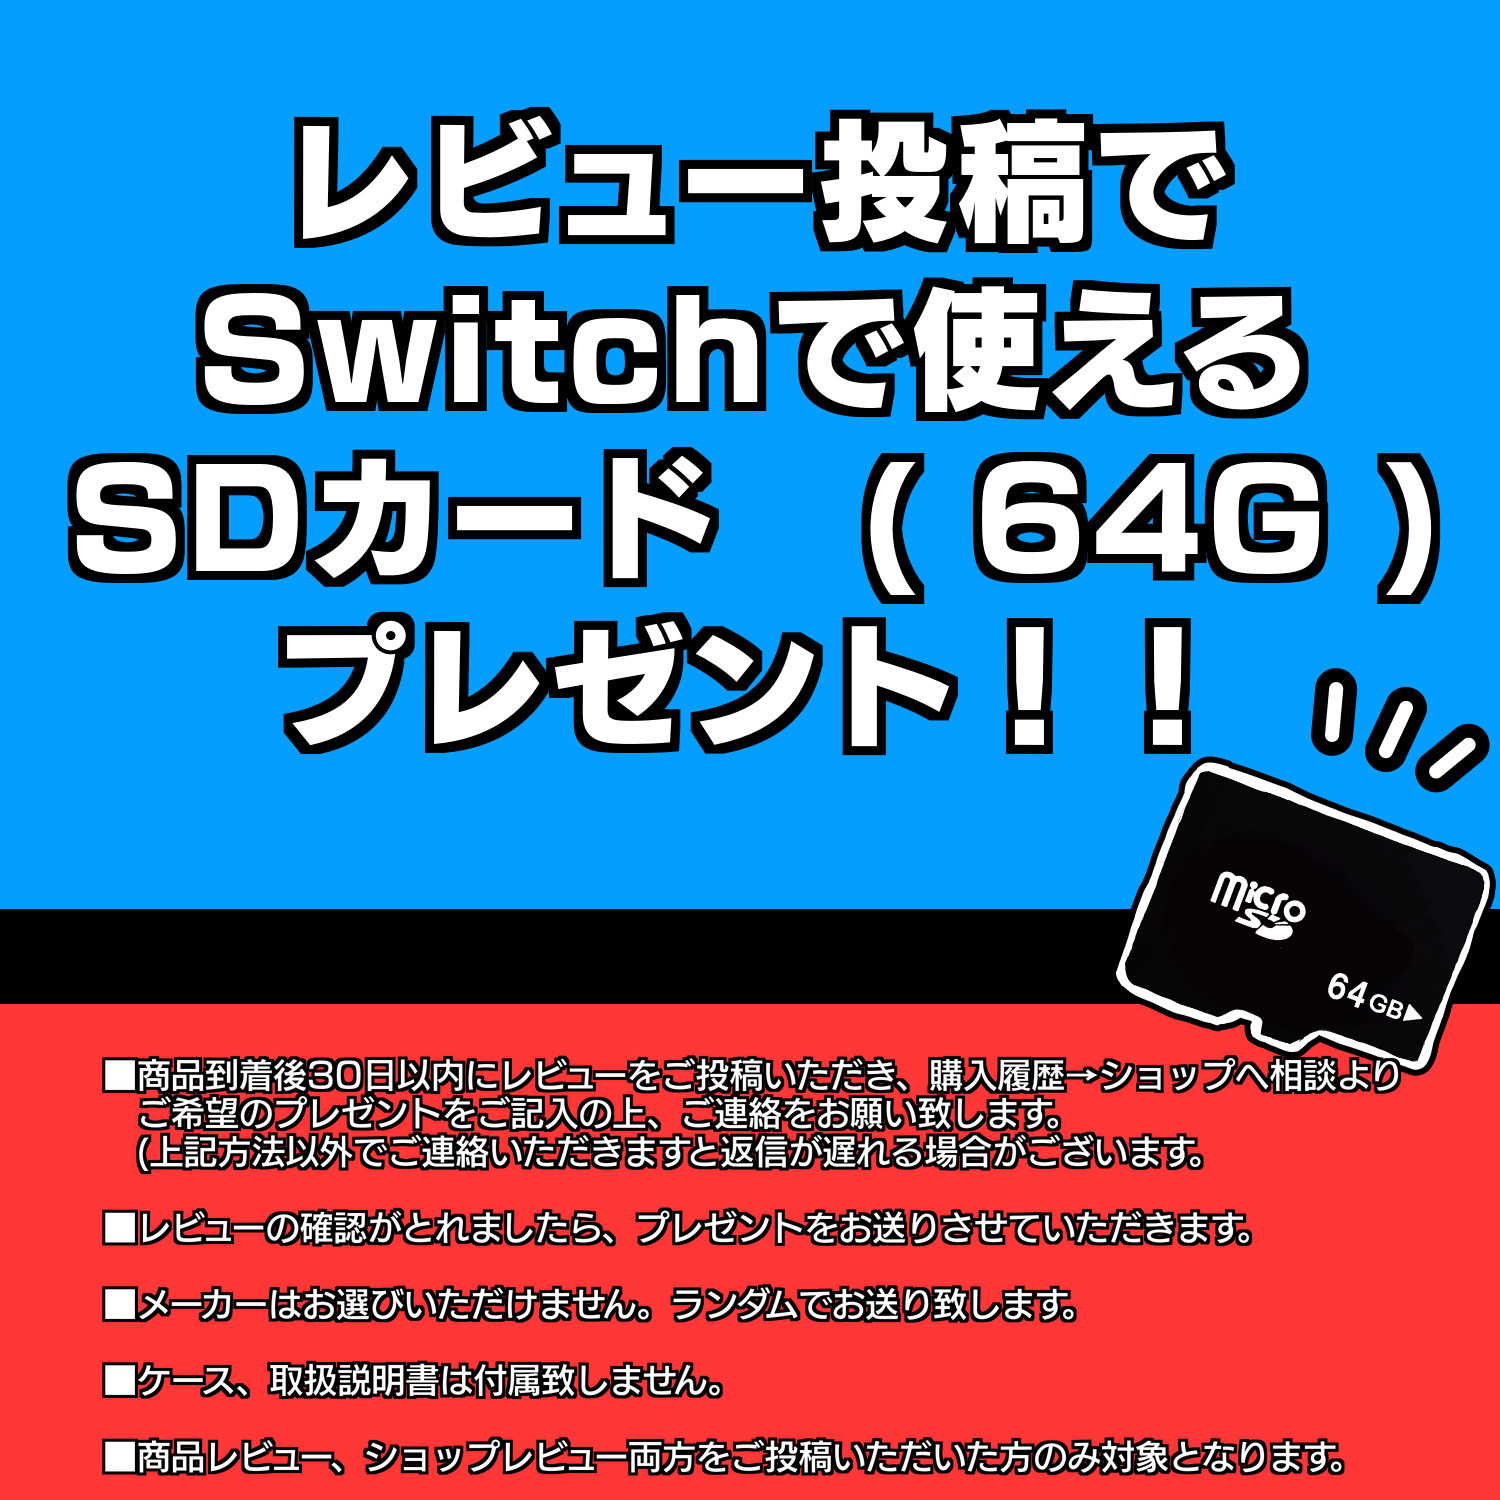 Nintendo Switch Lite 本体【 純正ACアダプタ 】選べるカラー5色 [ターコイズ / ピンク / イエロー / グレー / ブルー  ] ニンテンドー